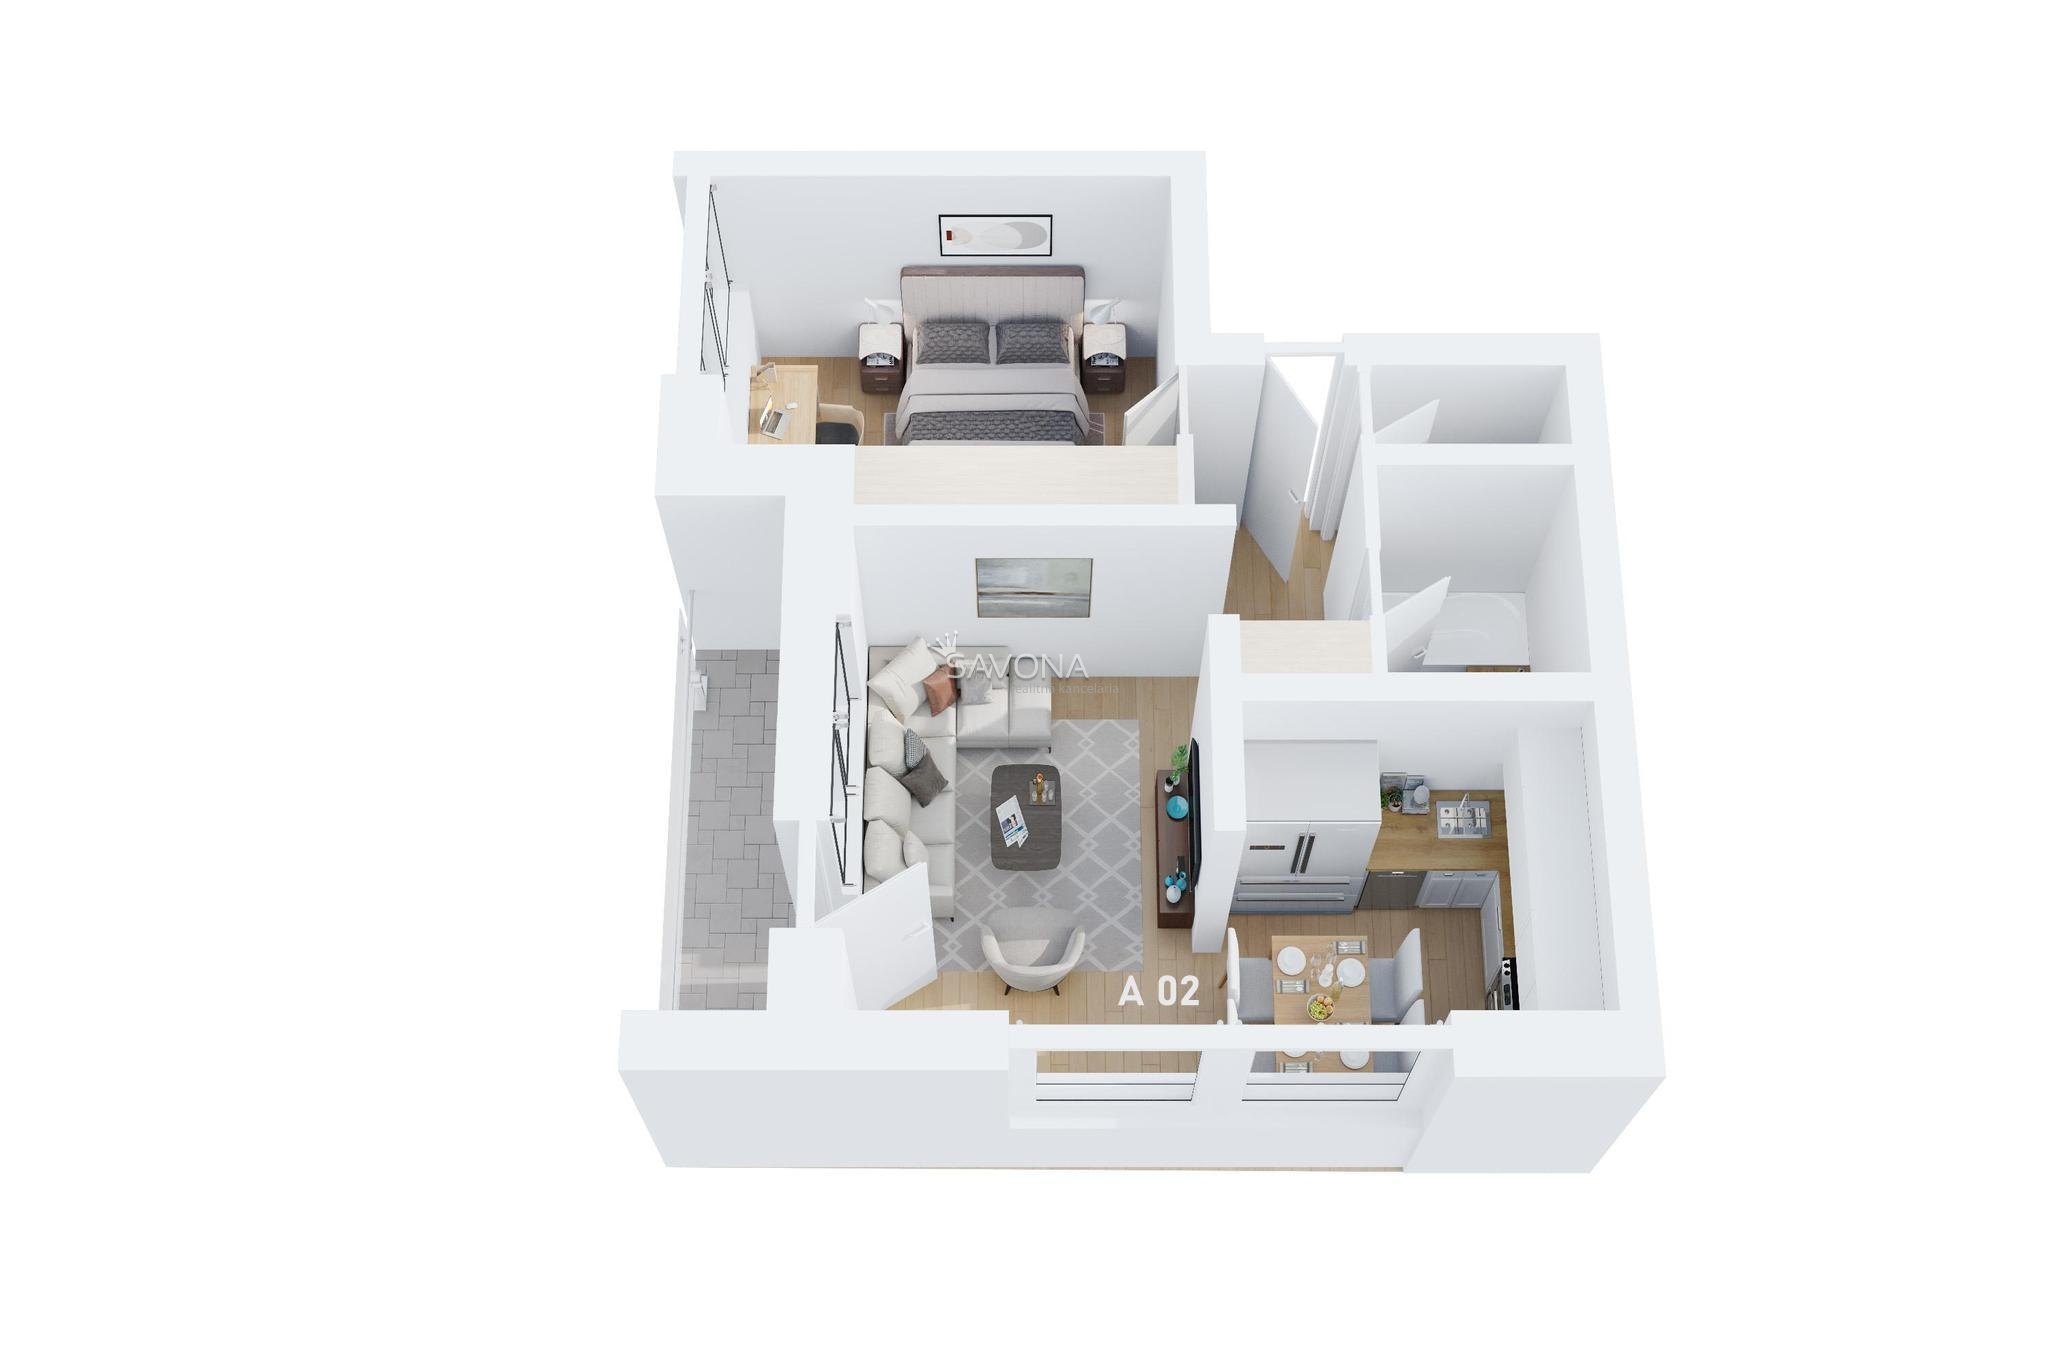 #napredaj 2 izbový byt | A 02 - 57,5 m2 - LUNA RESIDENCE